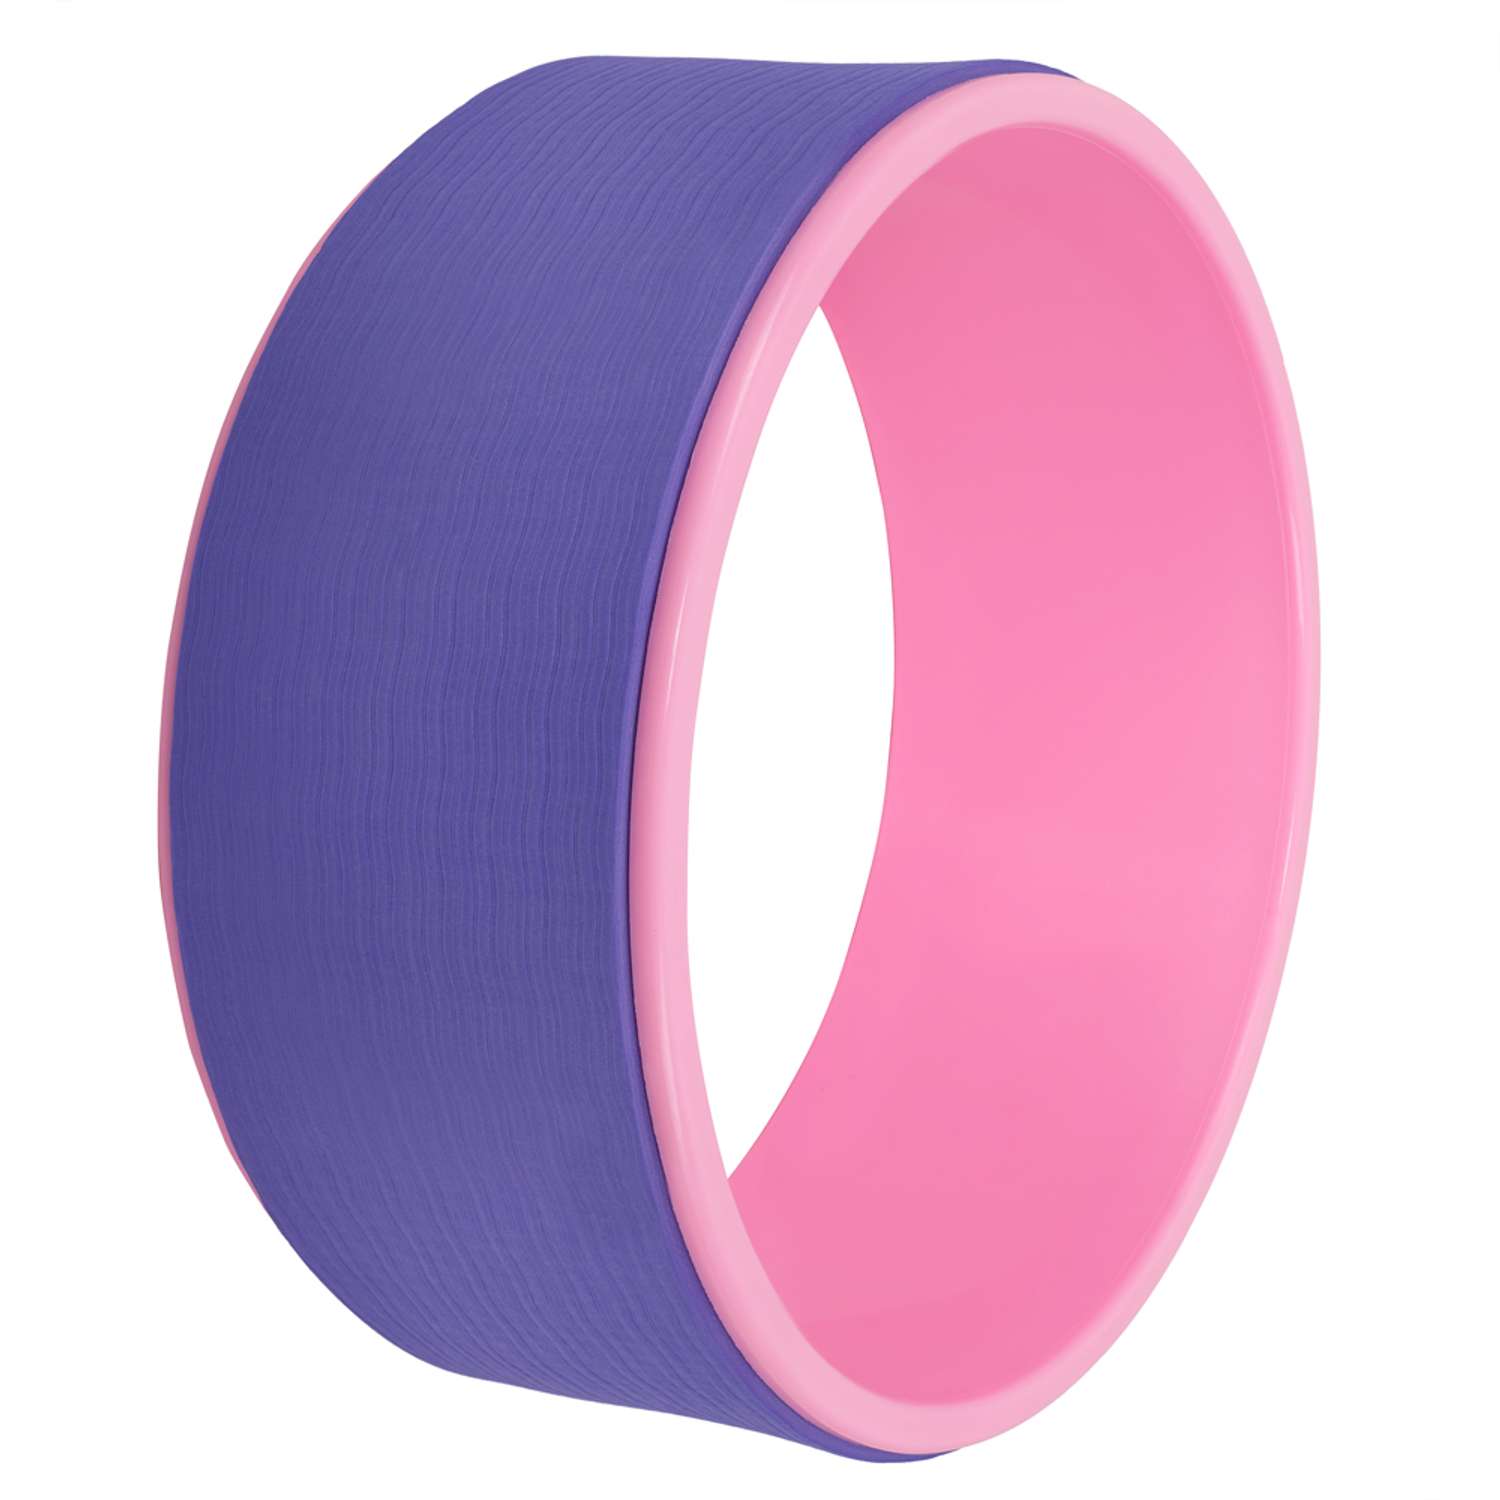 Колесо для йоги STRONG BODY фитнеса и пилатес 30 см х 12 см фиолетово-розовое - фото 2